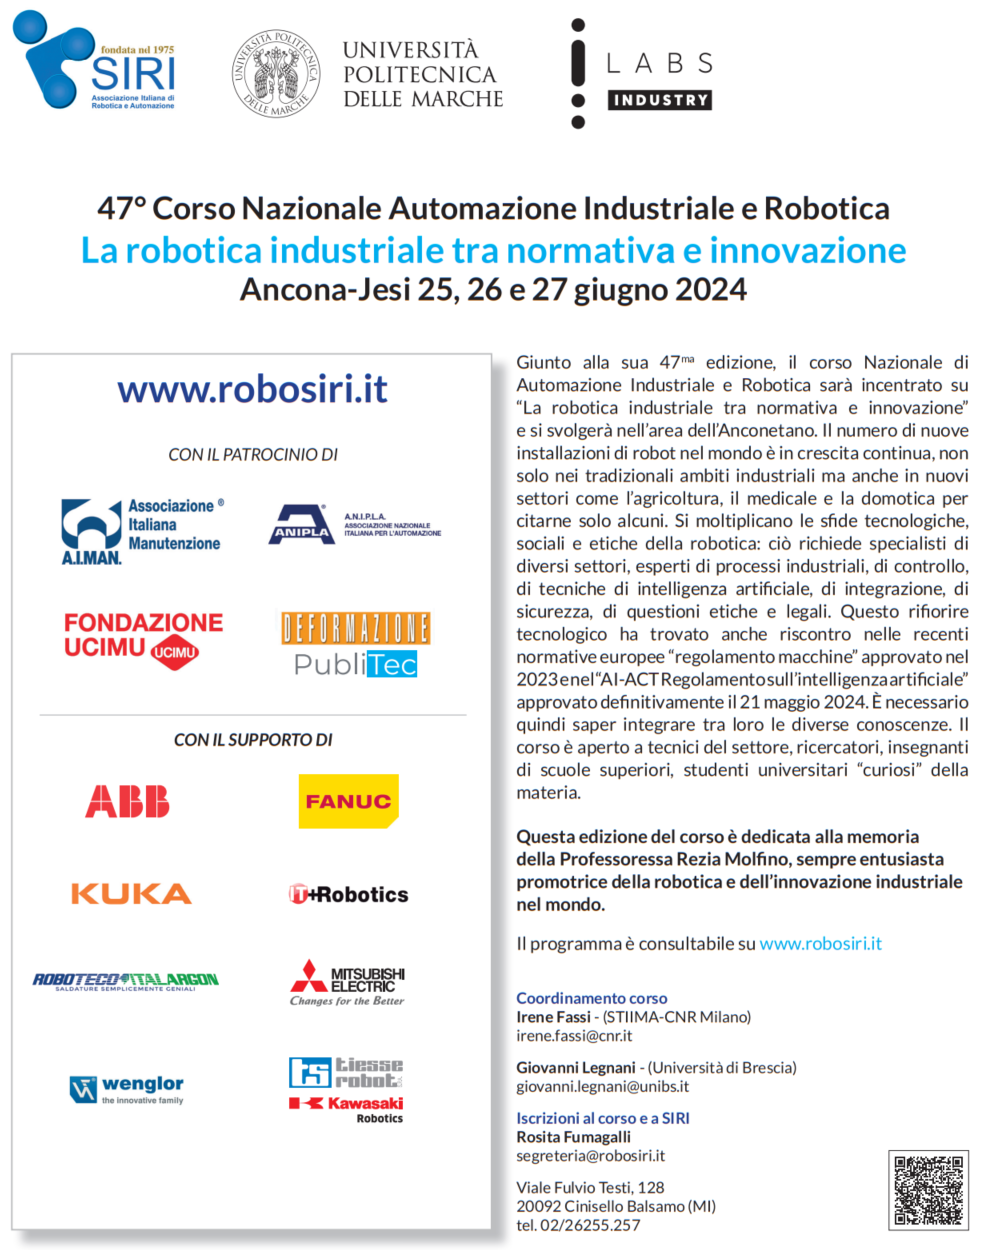 47° corso Nazionale di Automazione Industriale e Robotica, 25 – 26 – 27 giugno 2024